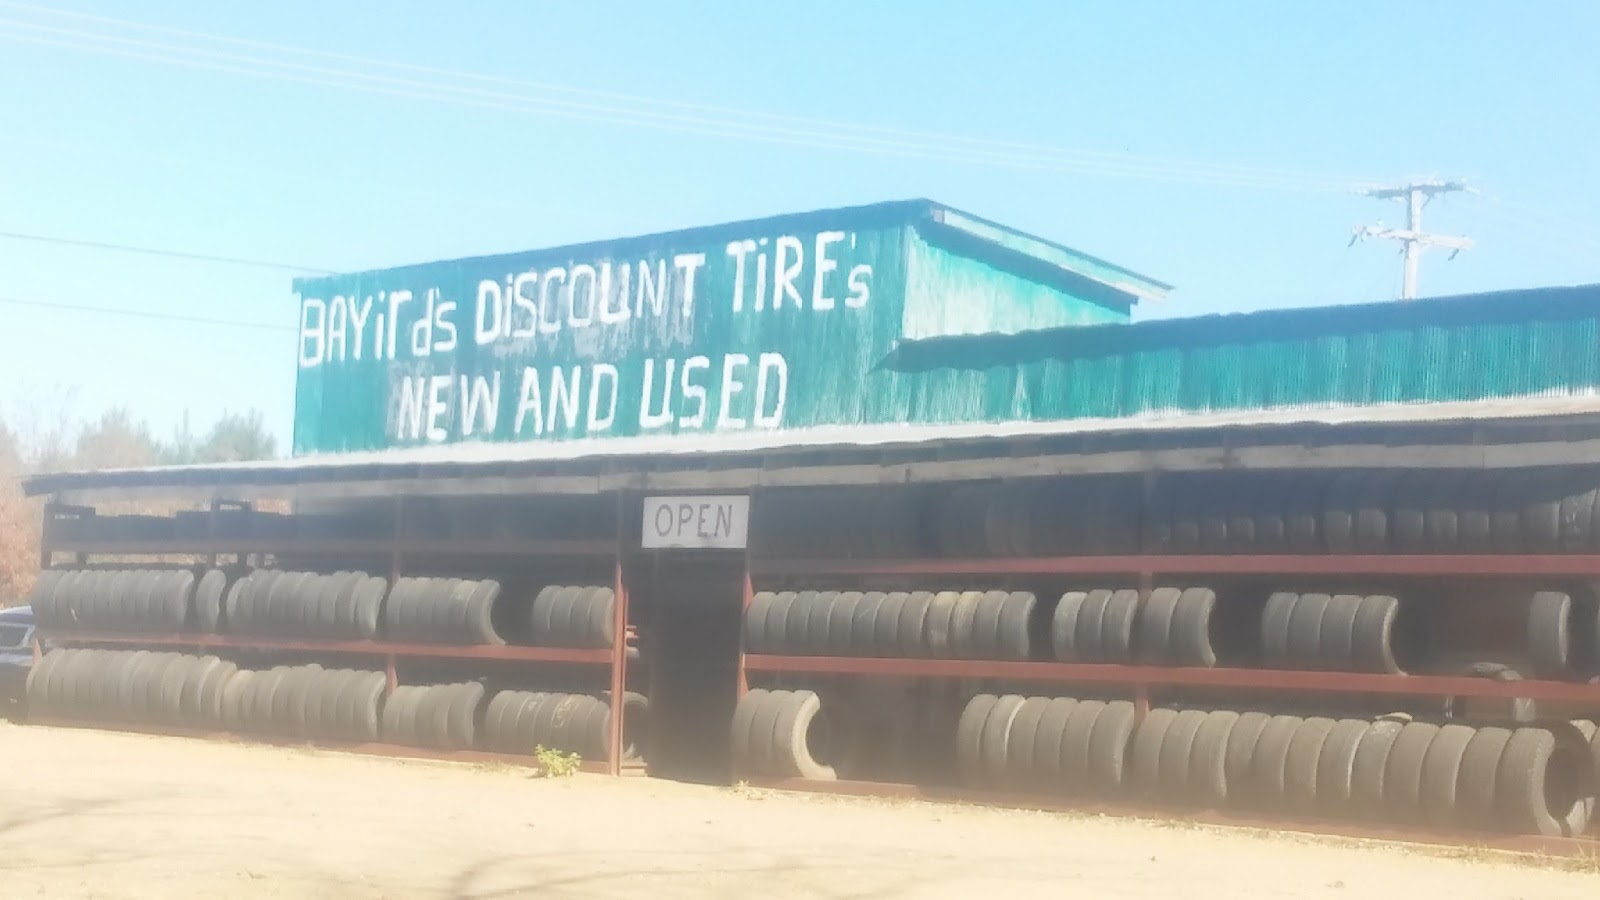 Bayird's Discount Tires